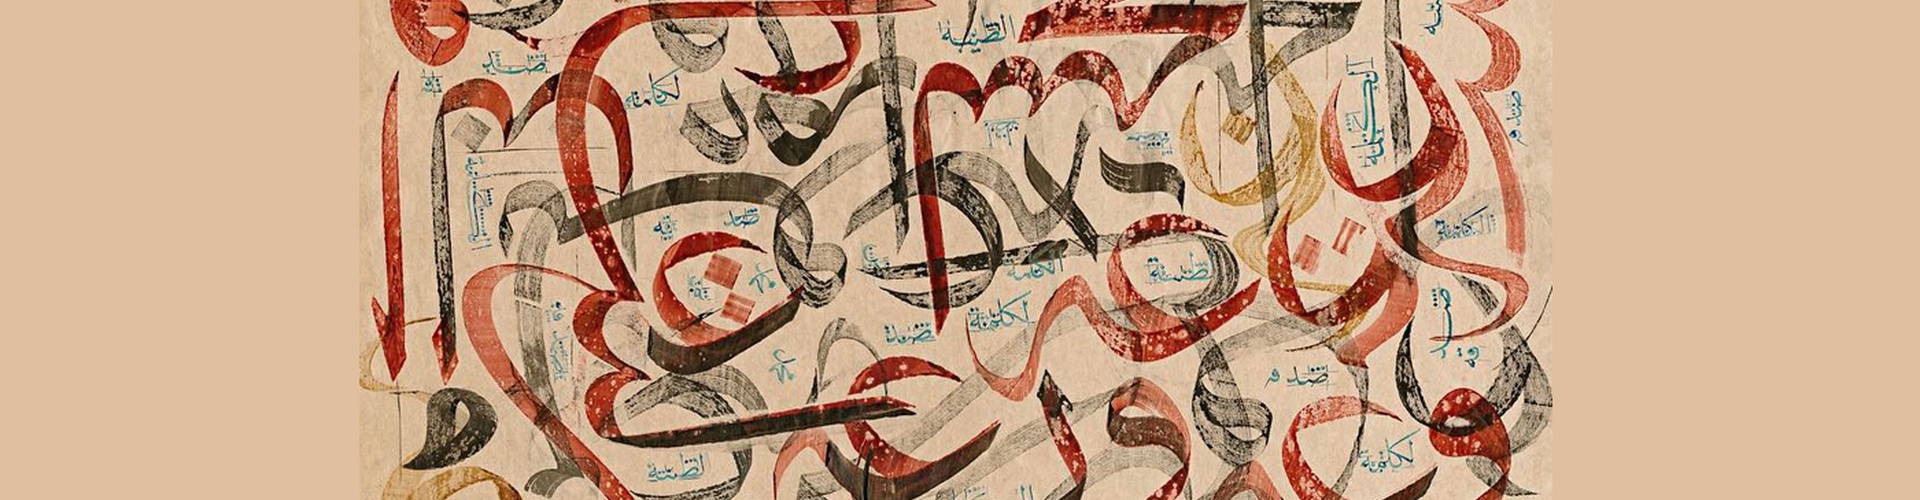 گالری آثار خوشنویسی محمد اوزچای از ترکیه